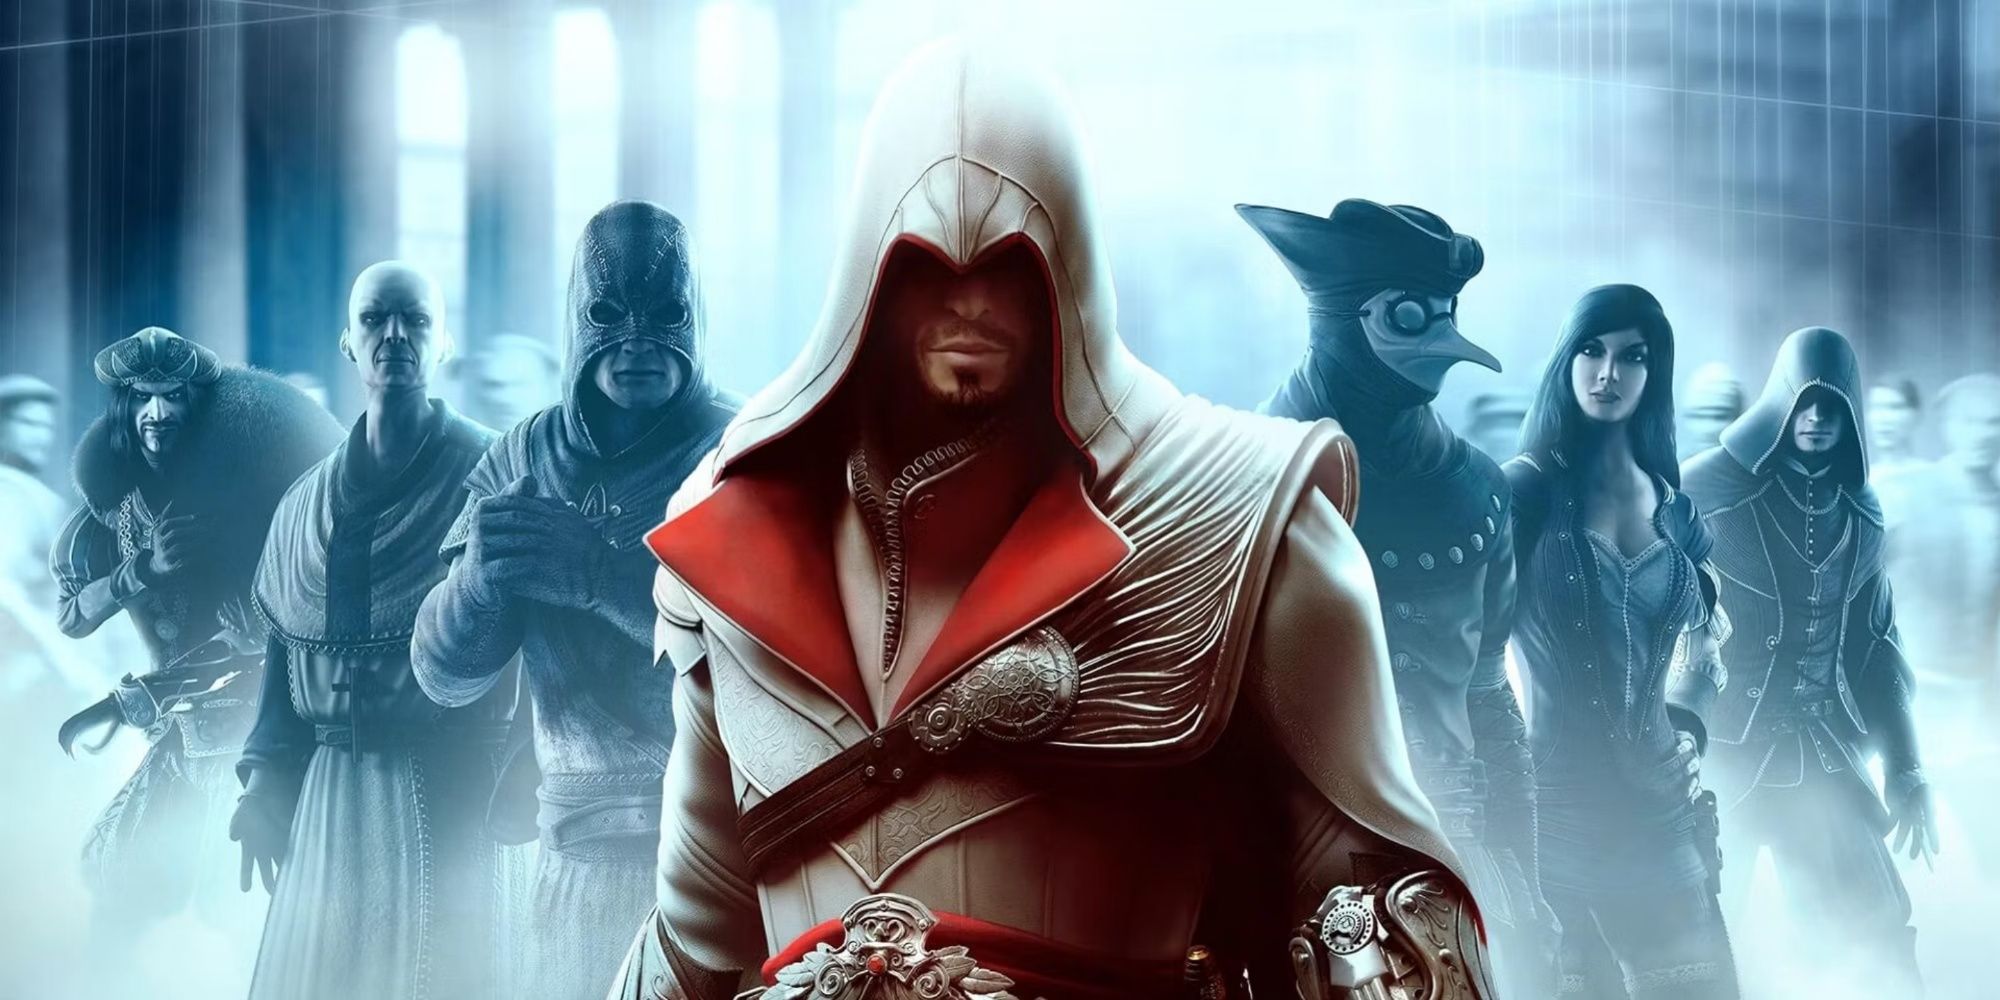 Assassins Creed Infinity — отличная возможность перенести серию в будущее